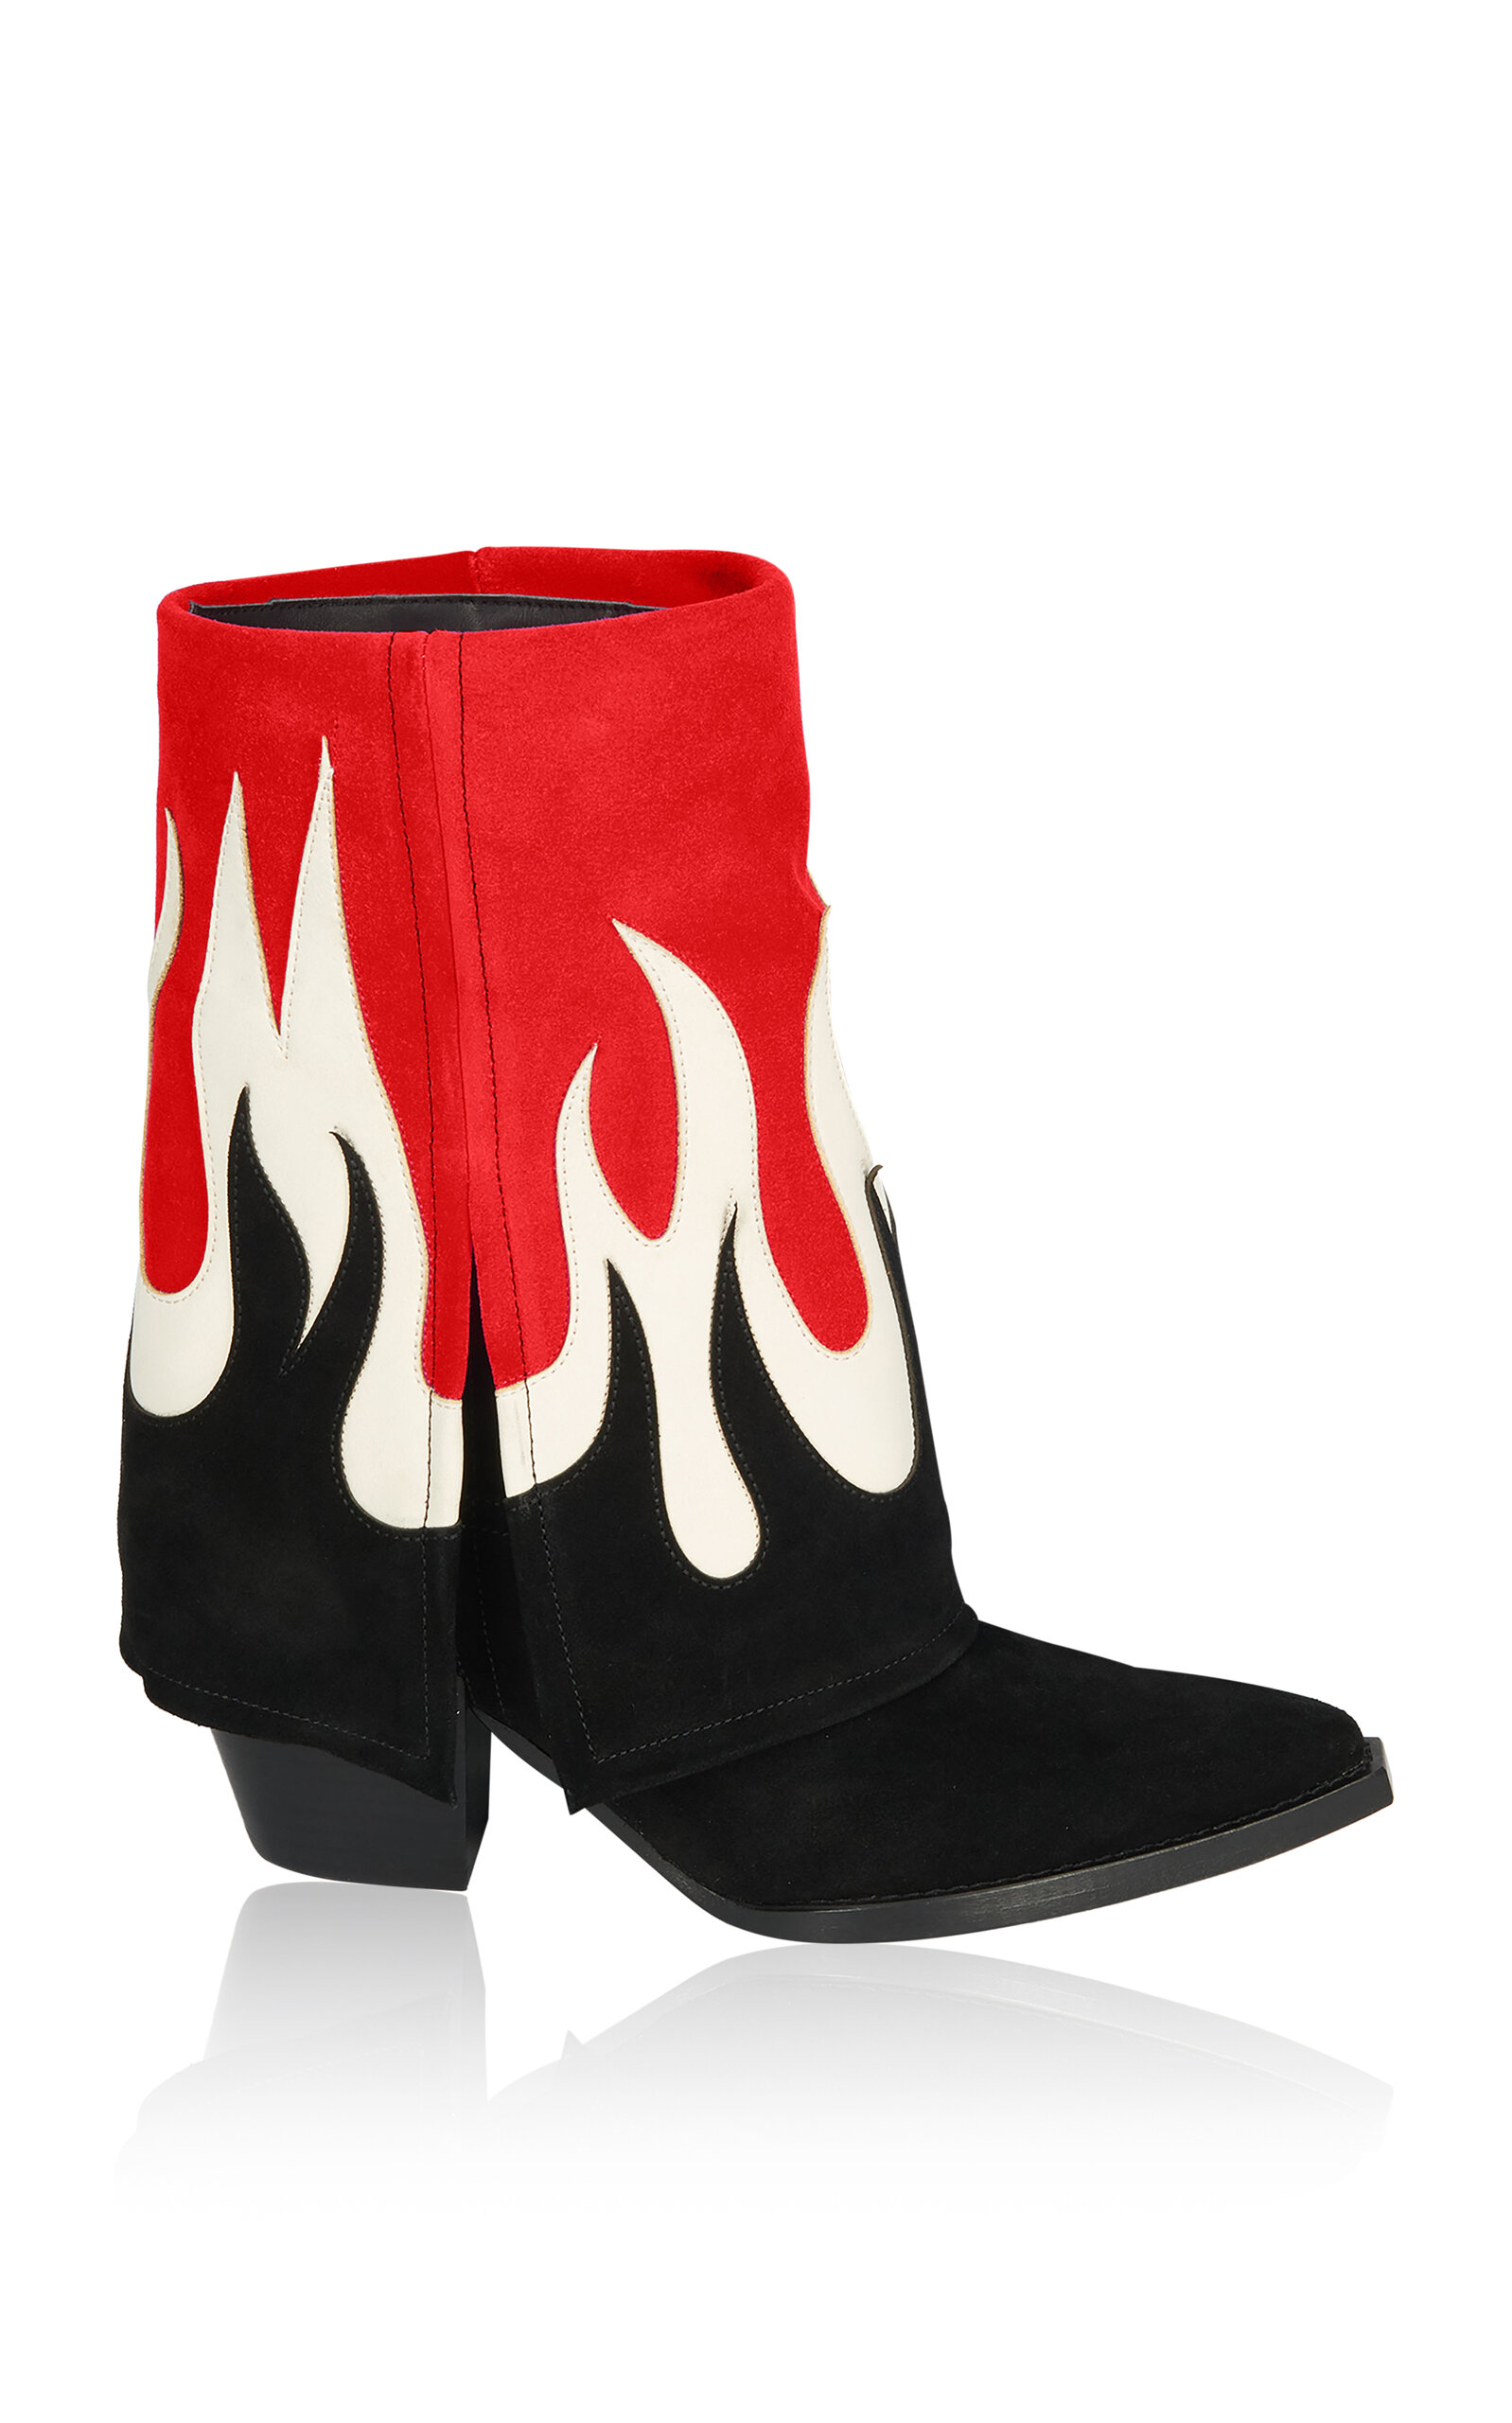 FILLES Ã PAPA Fire Fold Over Leather Low Western Boots